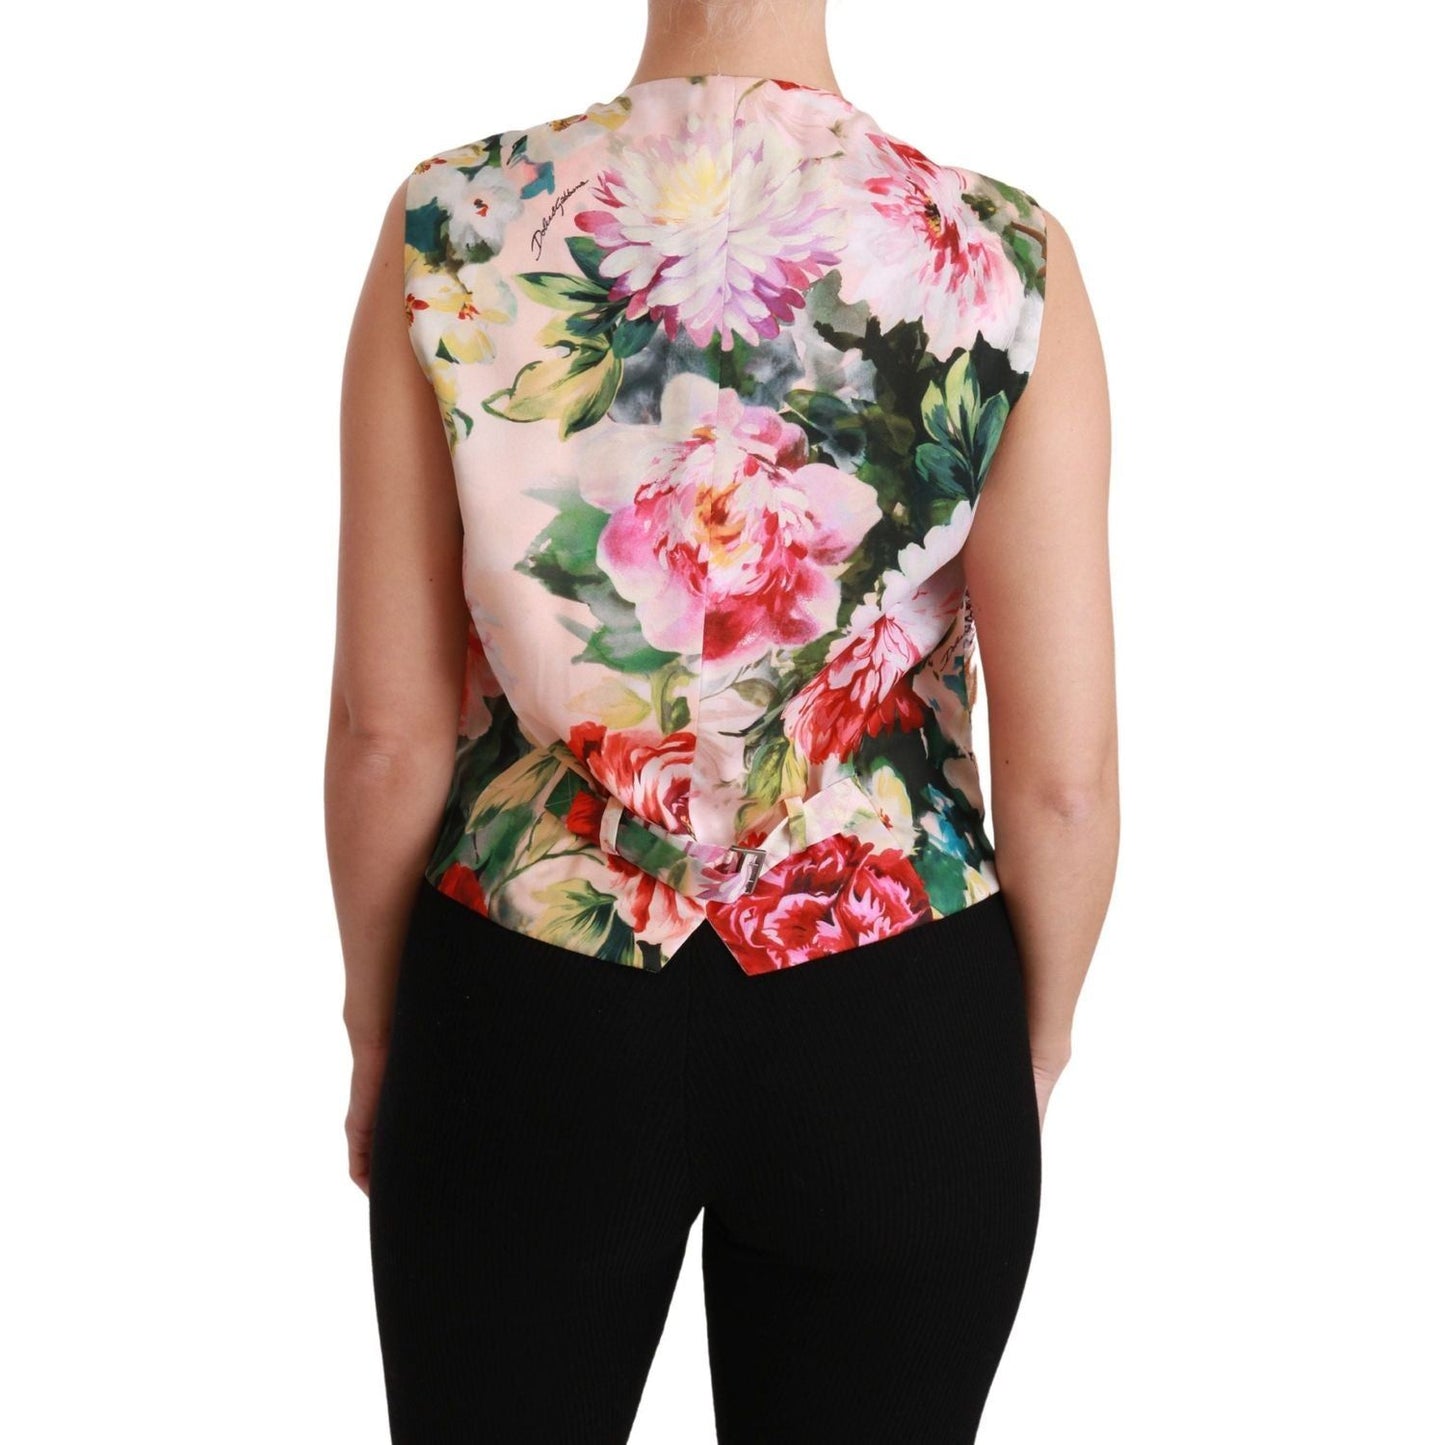 Dolce & GabbanaMulticolor Brocade Floral Sleeveless VestMcRichard Designer Brands£509.00